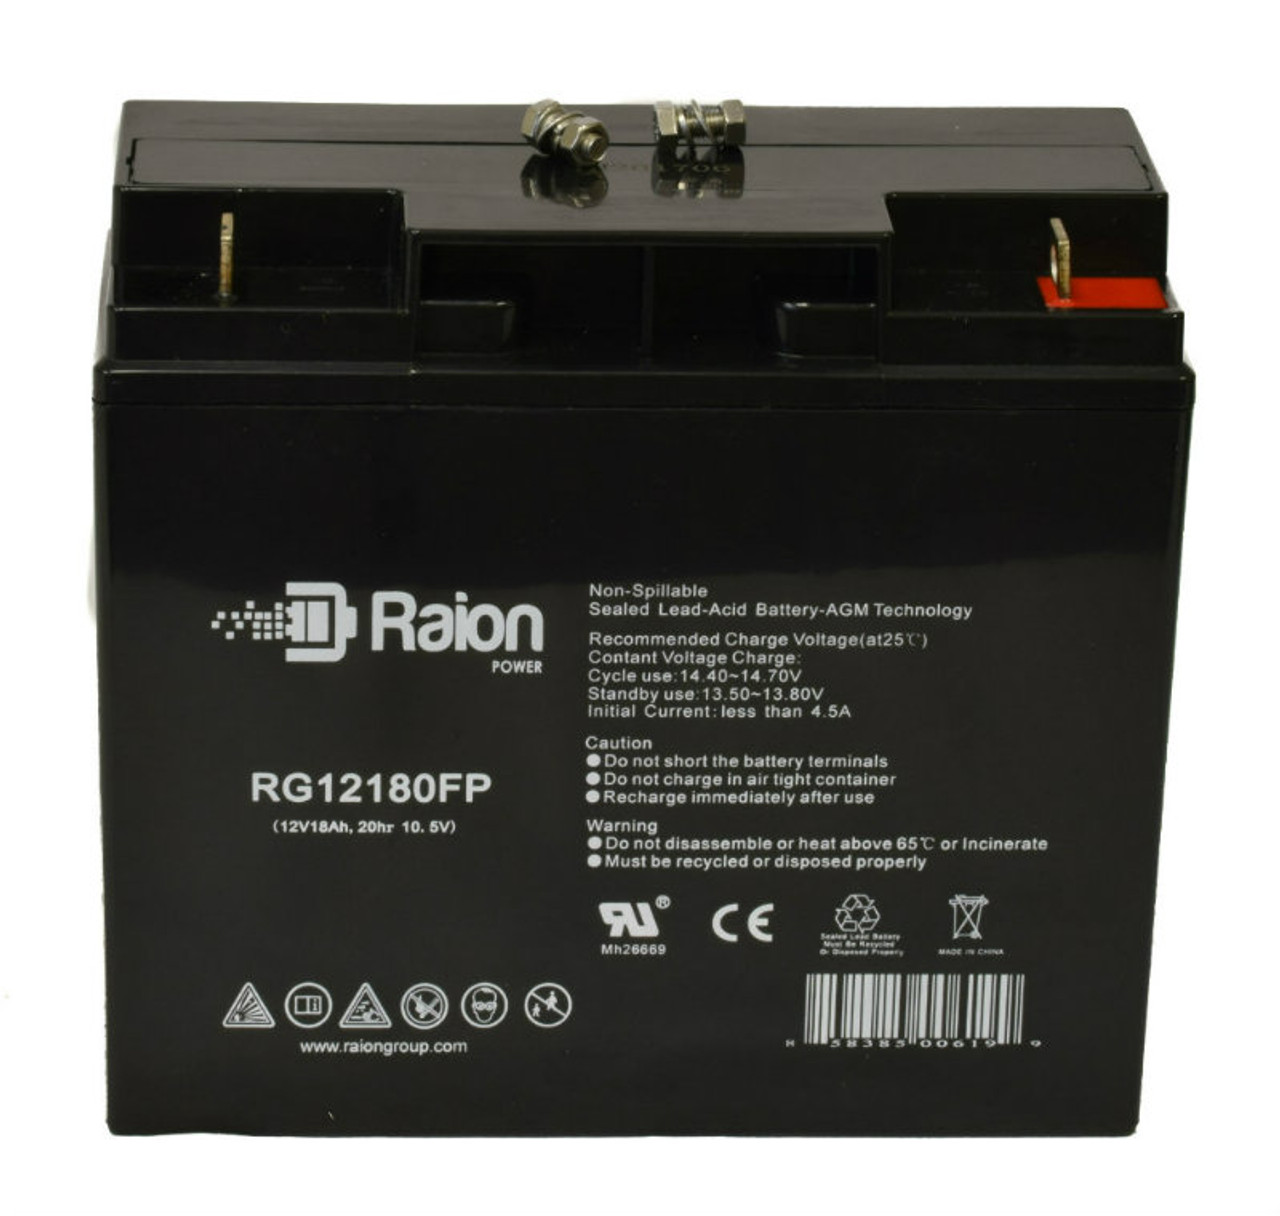 Raion Power RG12180FP 12V 18Ah Lead Acid Battery for National Power Corporation GT090SR